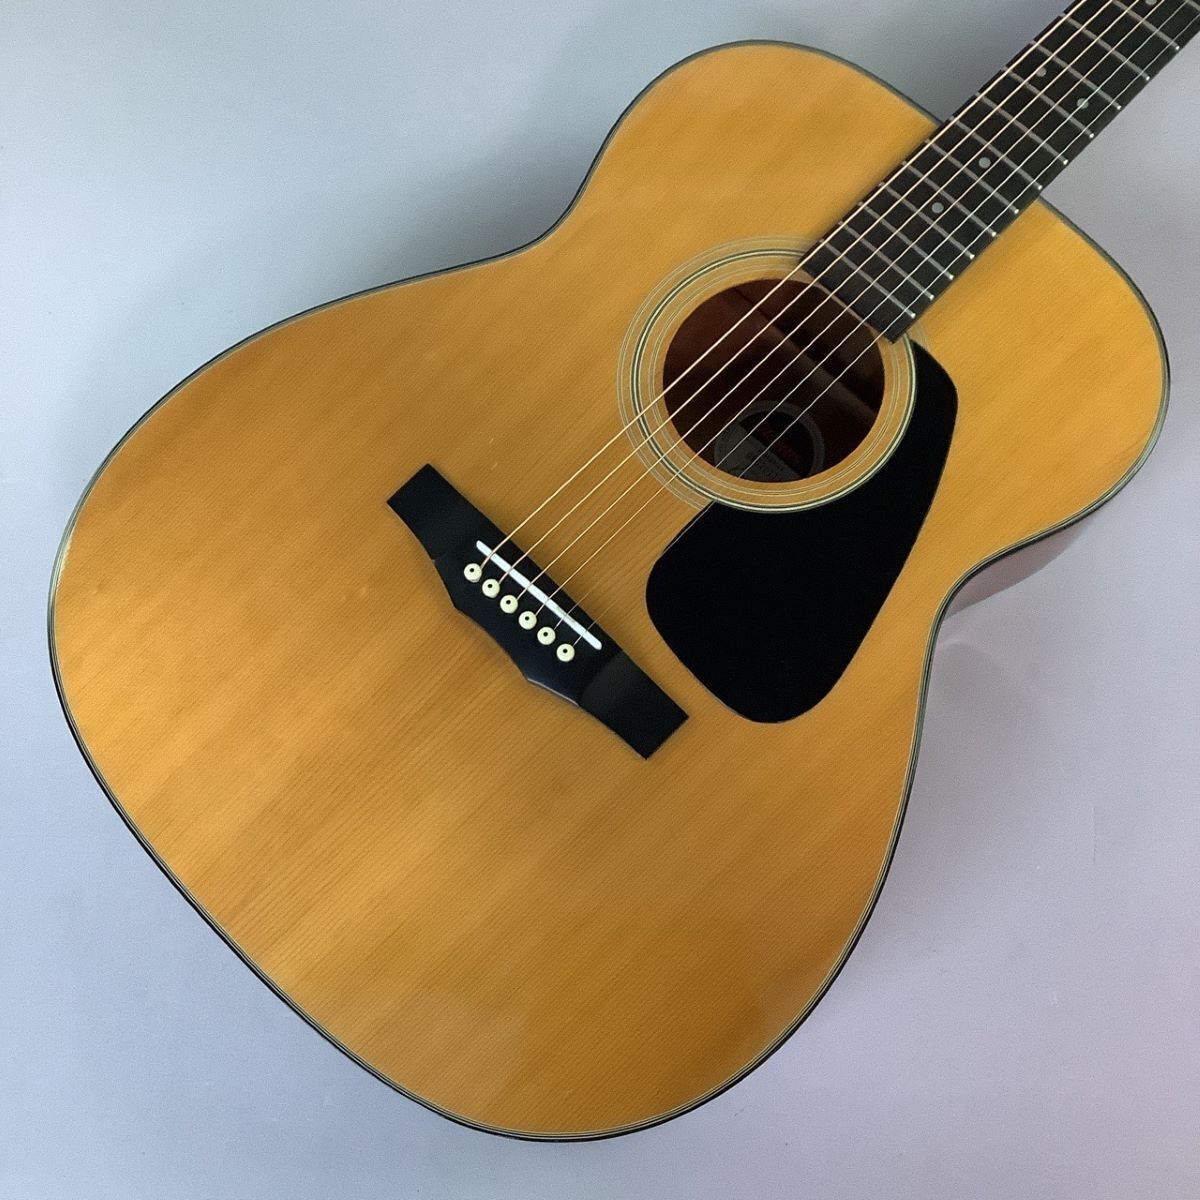 Morris F01-Ii Acoustic Guitar